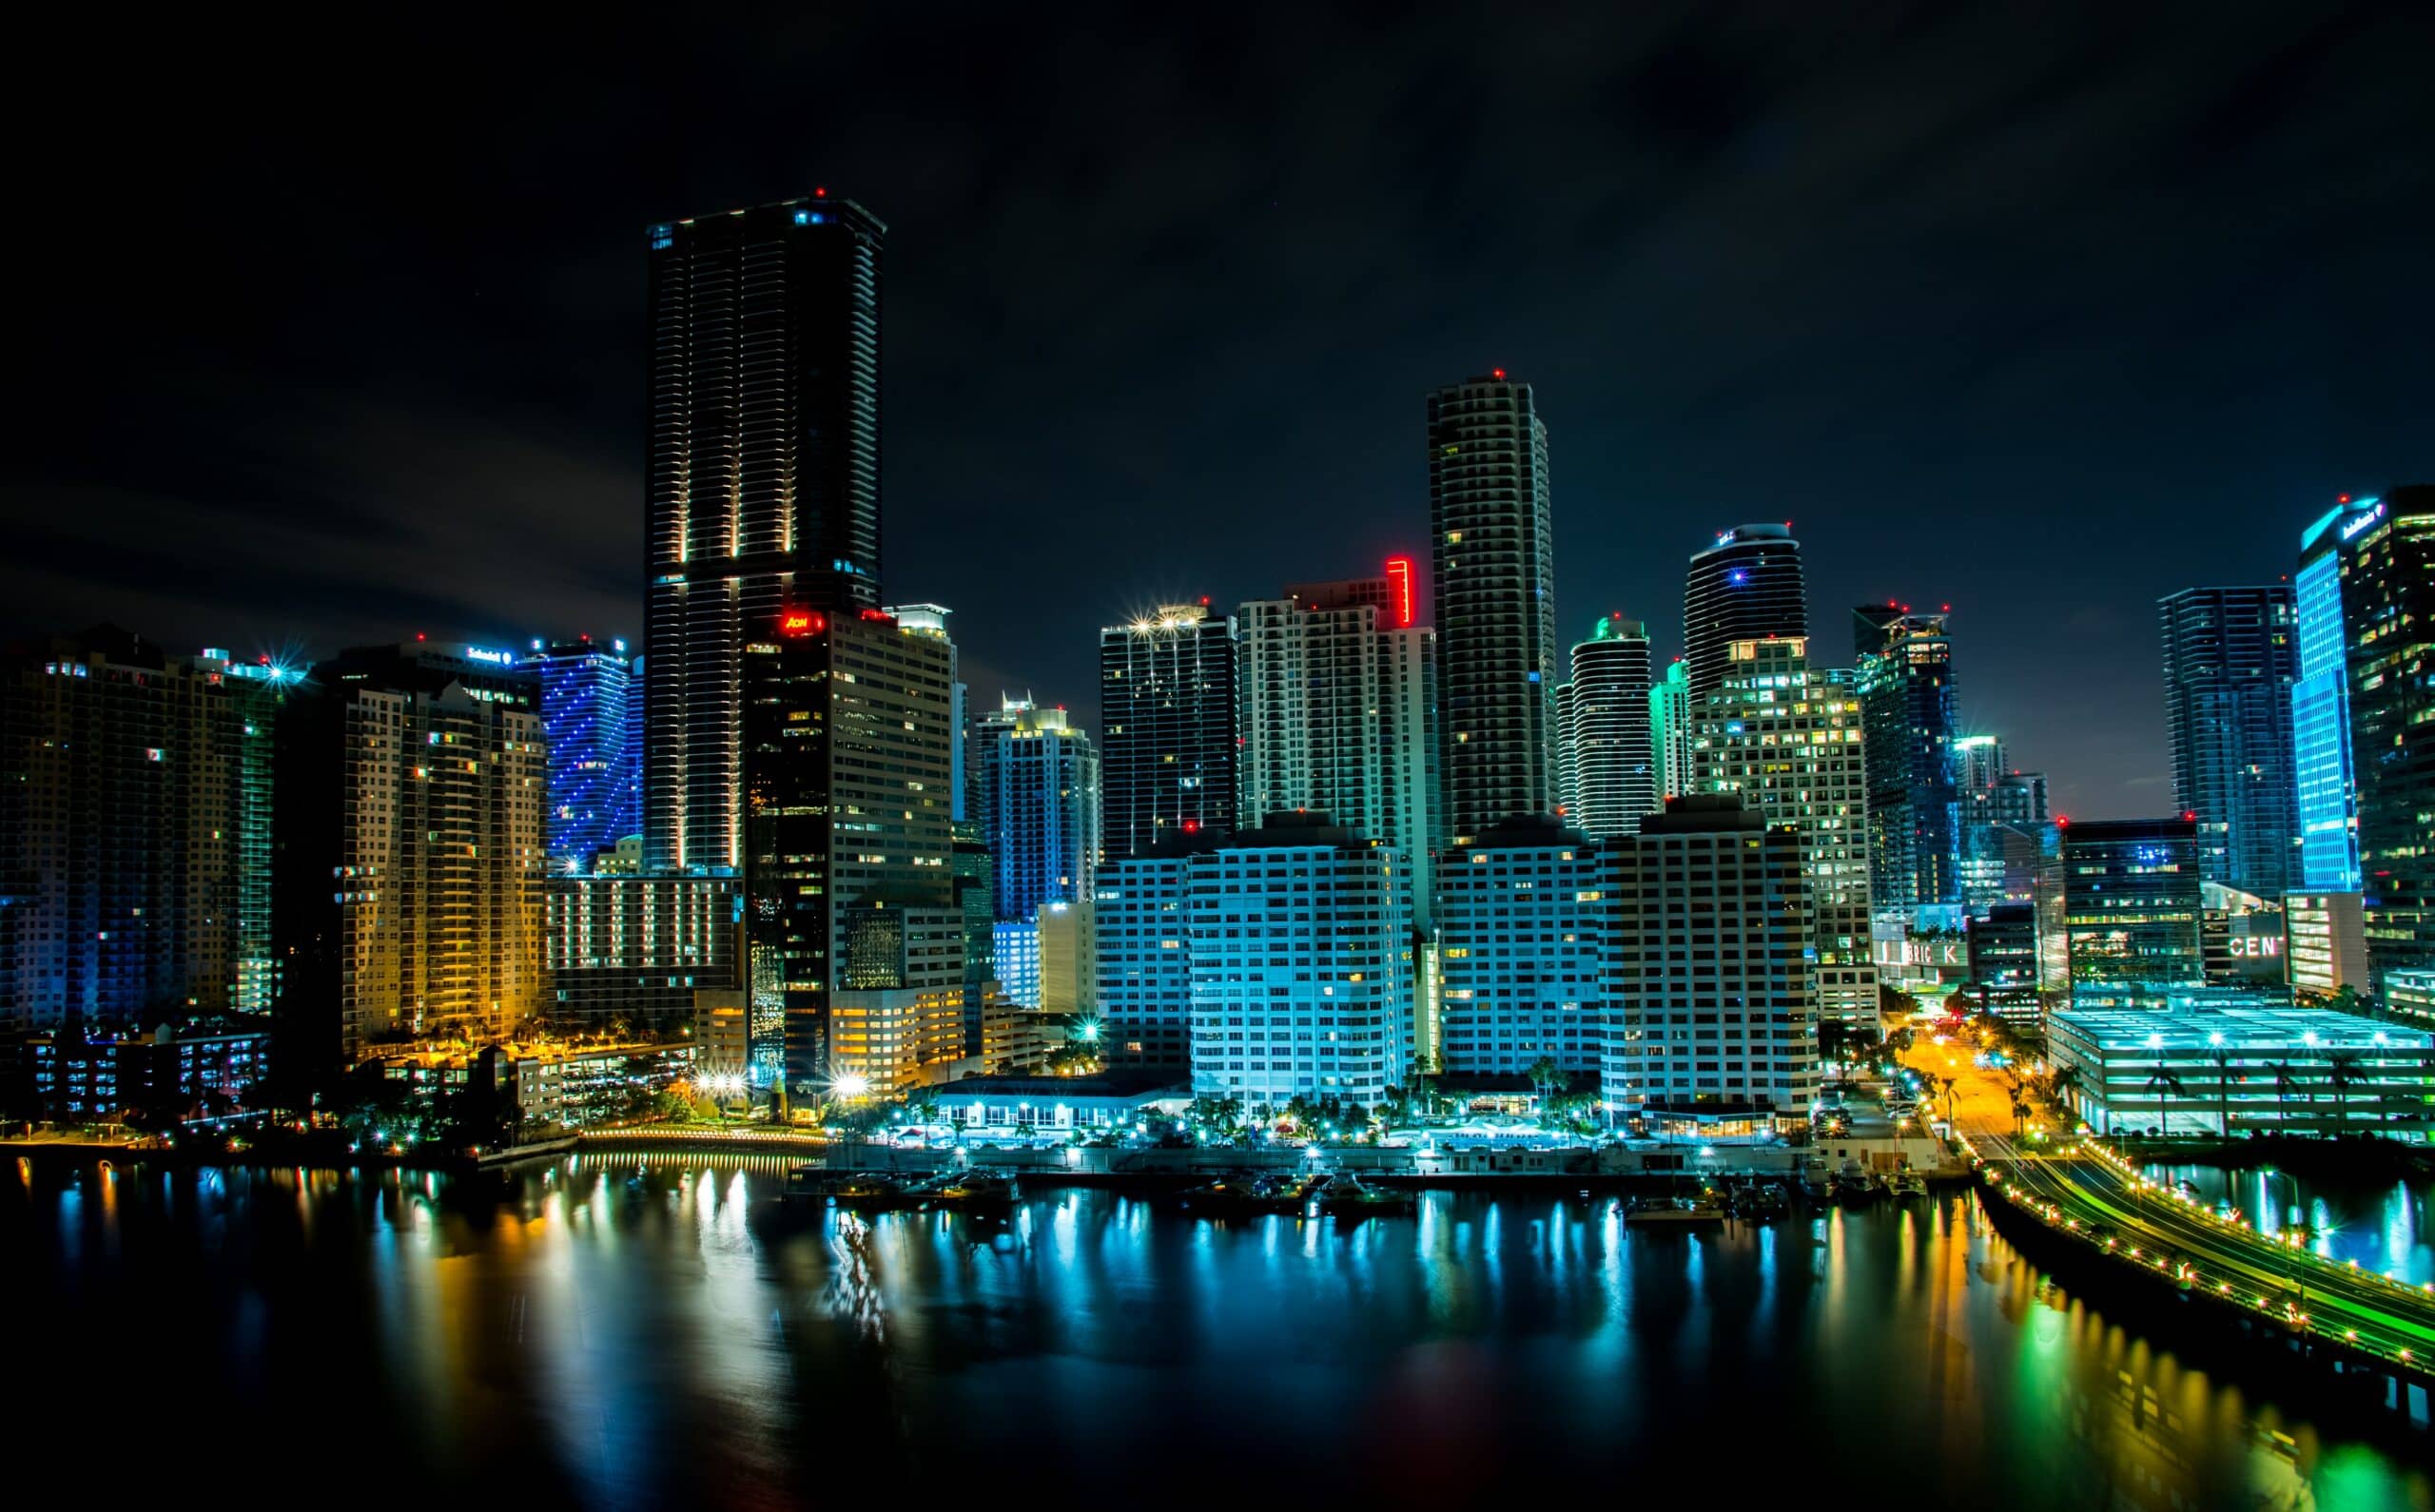 Vista da cidade de Miami à noite com vários prédios iluminados.